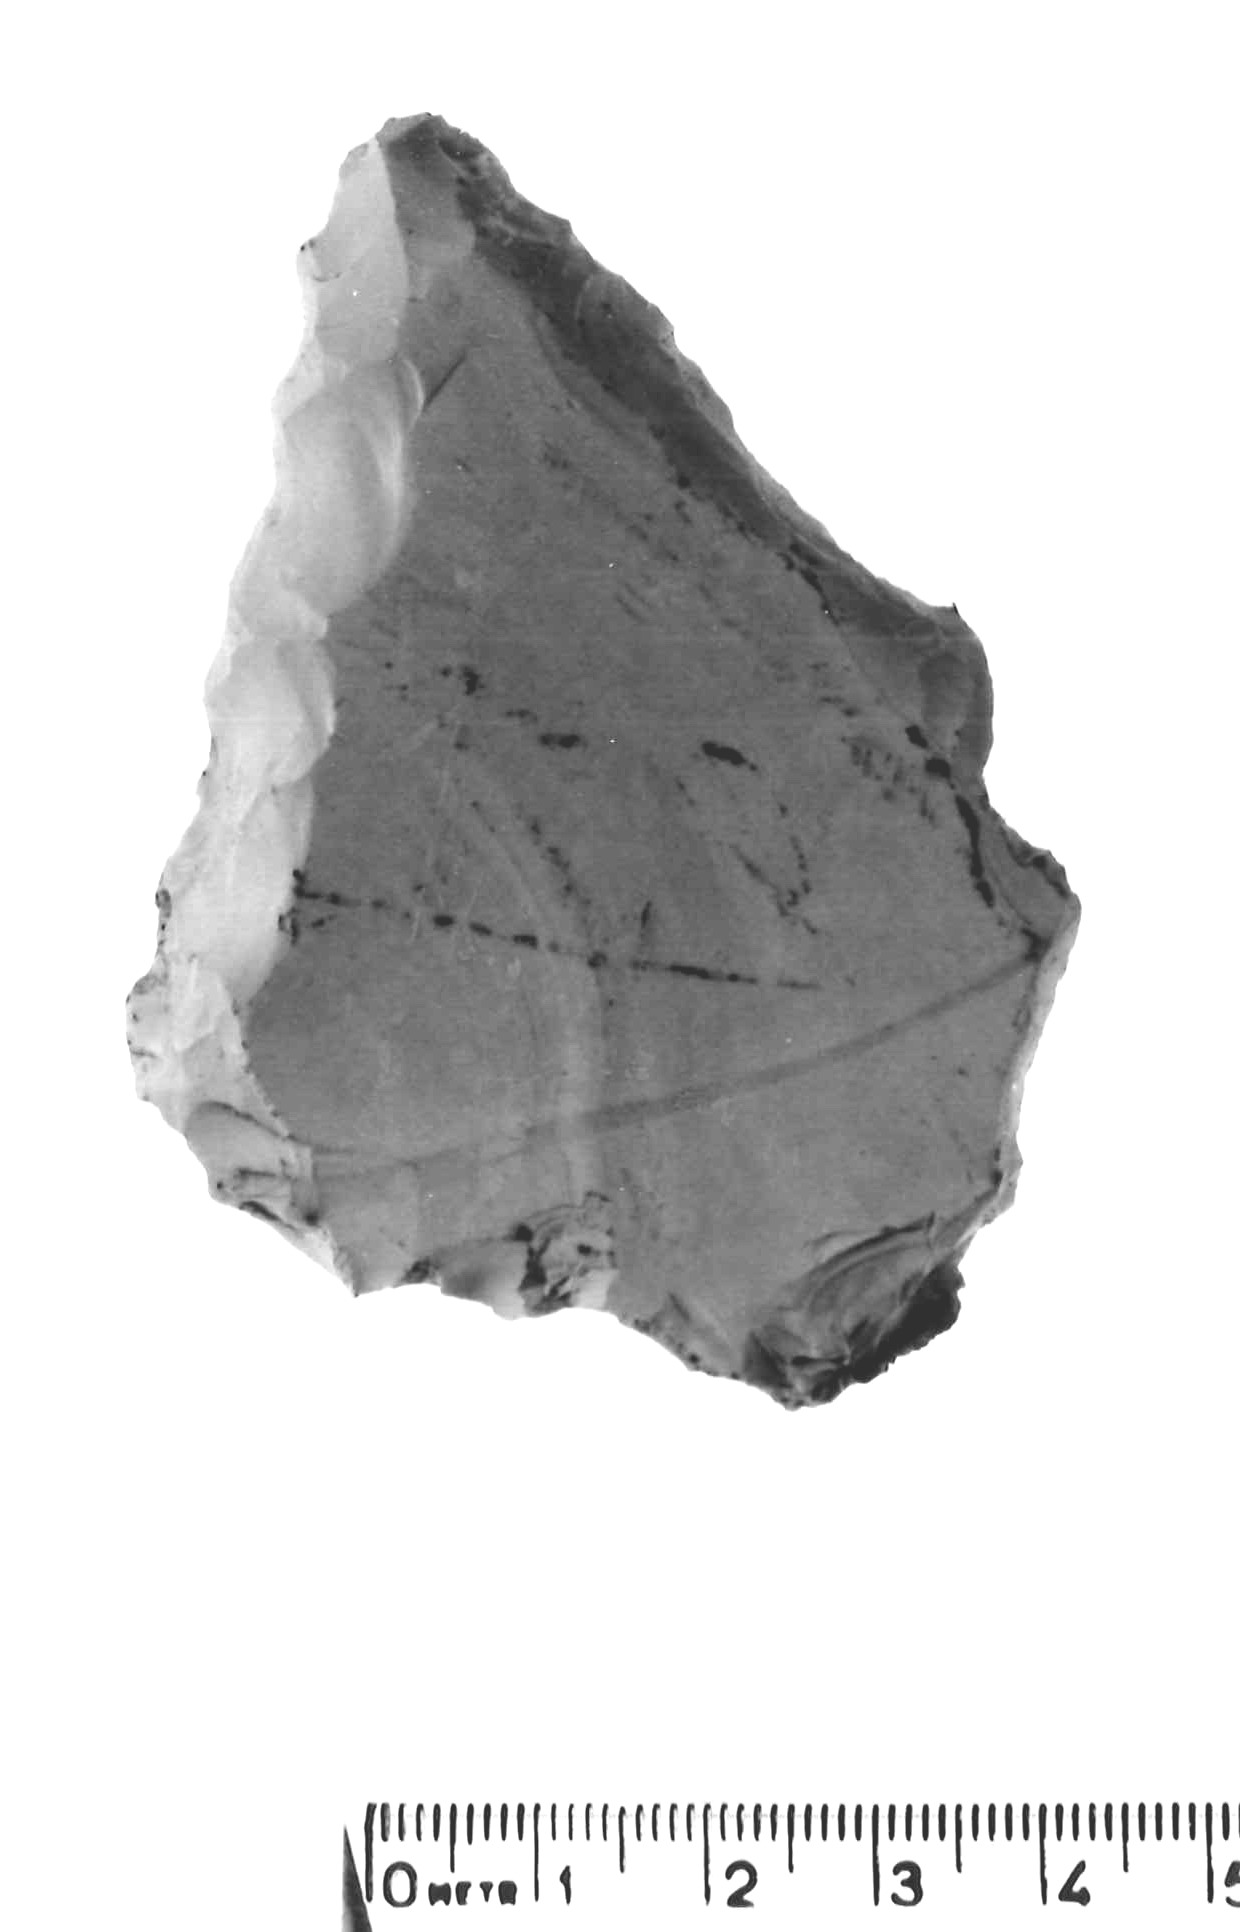 raschiatoio latero-trasversale - musteriano (paleolitico medio)